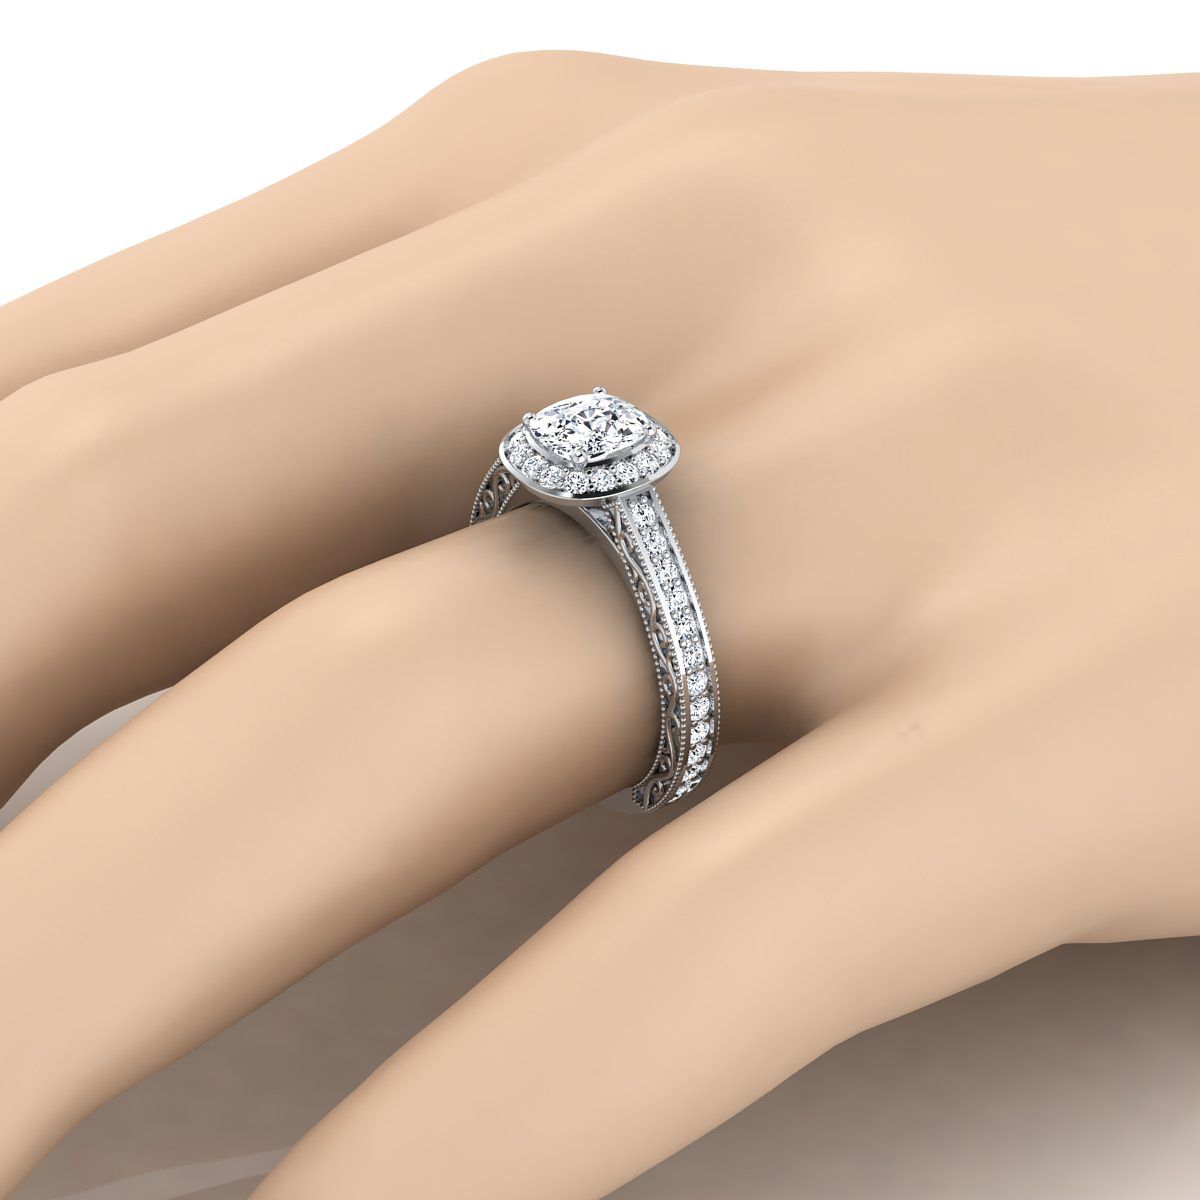 แหวนหมั้นเพชรมิลเกรน 18K เบาะทองคำขาวแกะสลักด้วยมือ -1/2 กะรัต